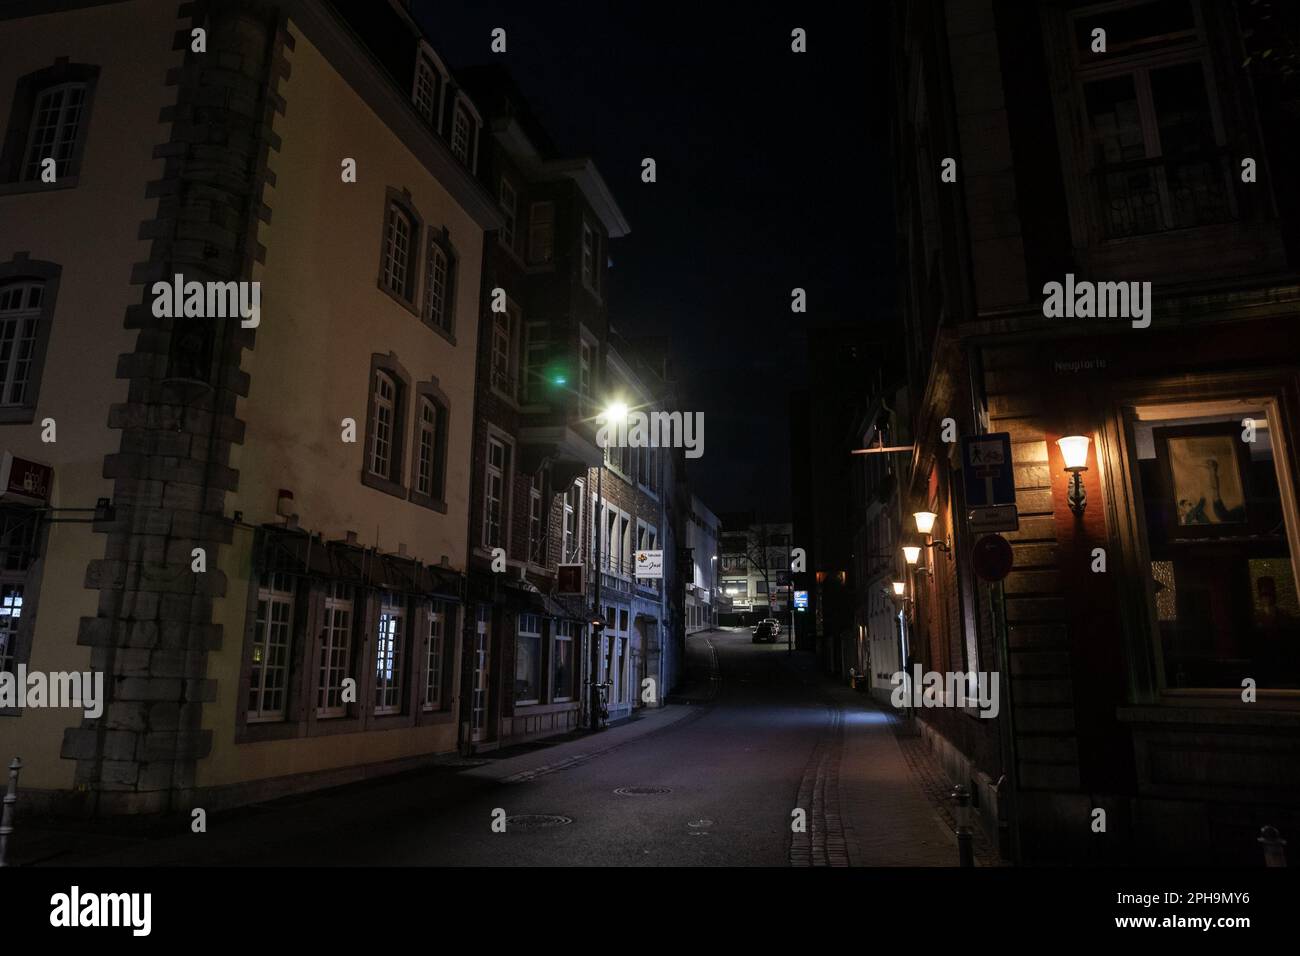 Foto delle facciate della strada Mostardstrasse di notte, vuota e deserta , con un'architettura tedesca d'epoca, nel centro di Aquisgrana, Germa Foto Stock